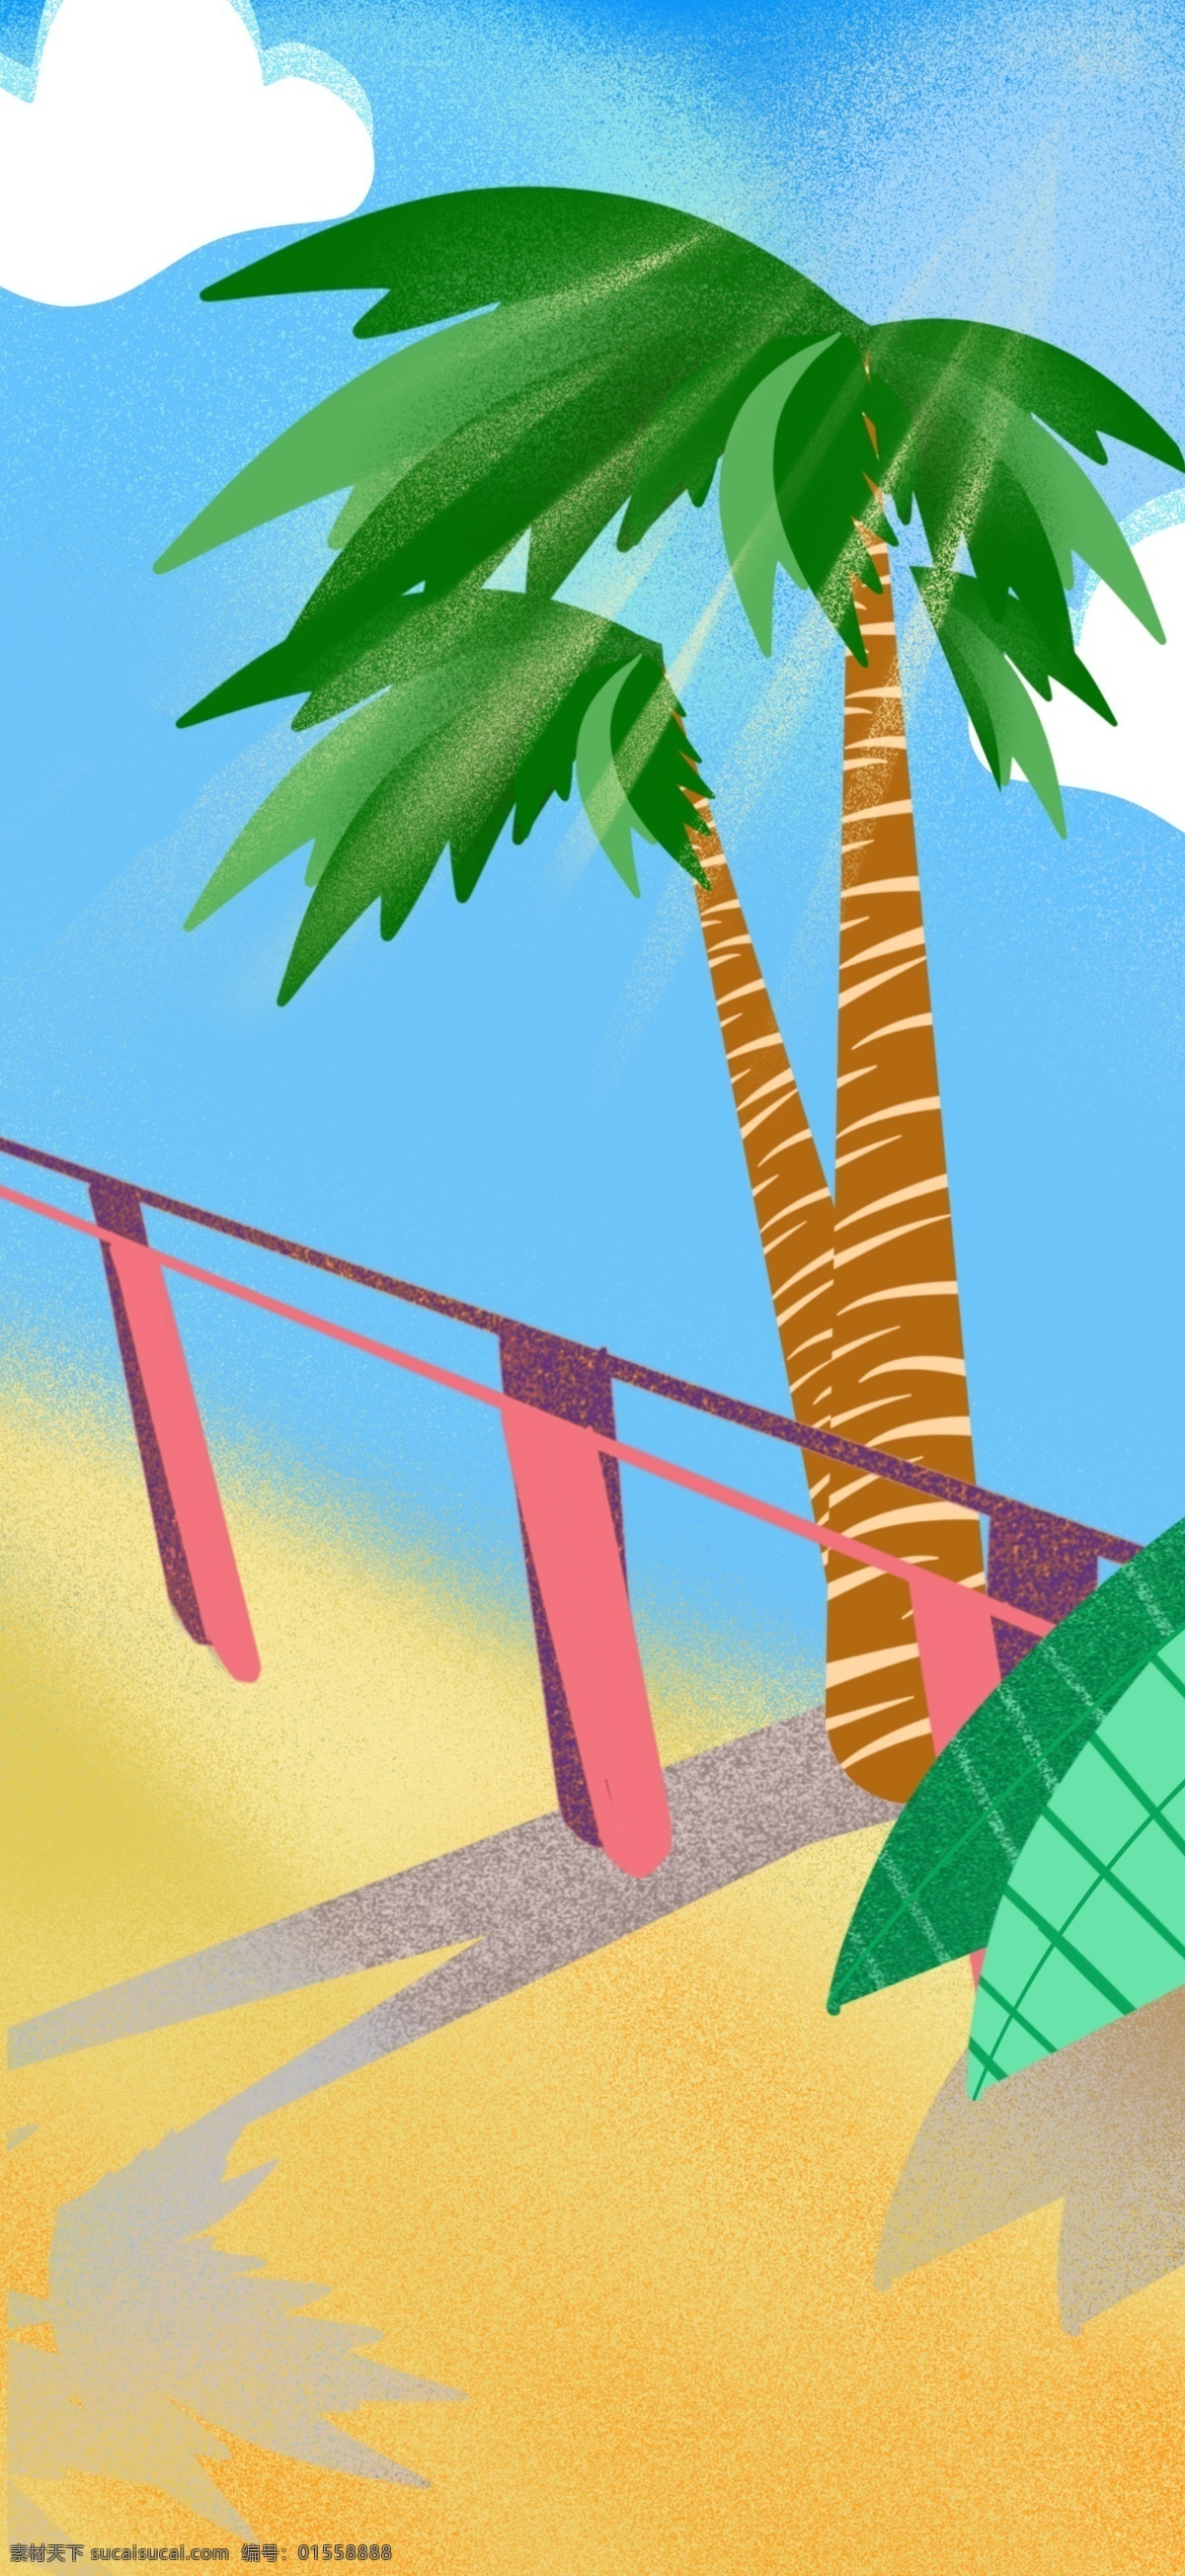 蓝色 夏日 旅游 季 海边 椰子树 背景 海边背景 手绘背景 冰爽夏日 卡通背景 阳光背景 水彩背景 夏日背景